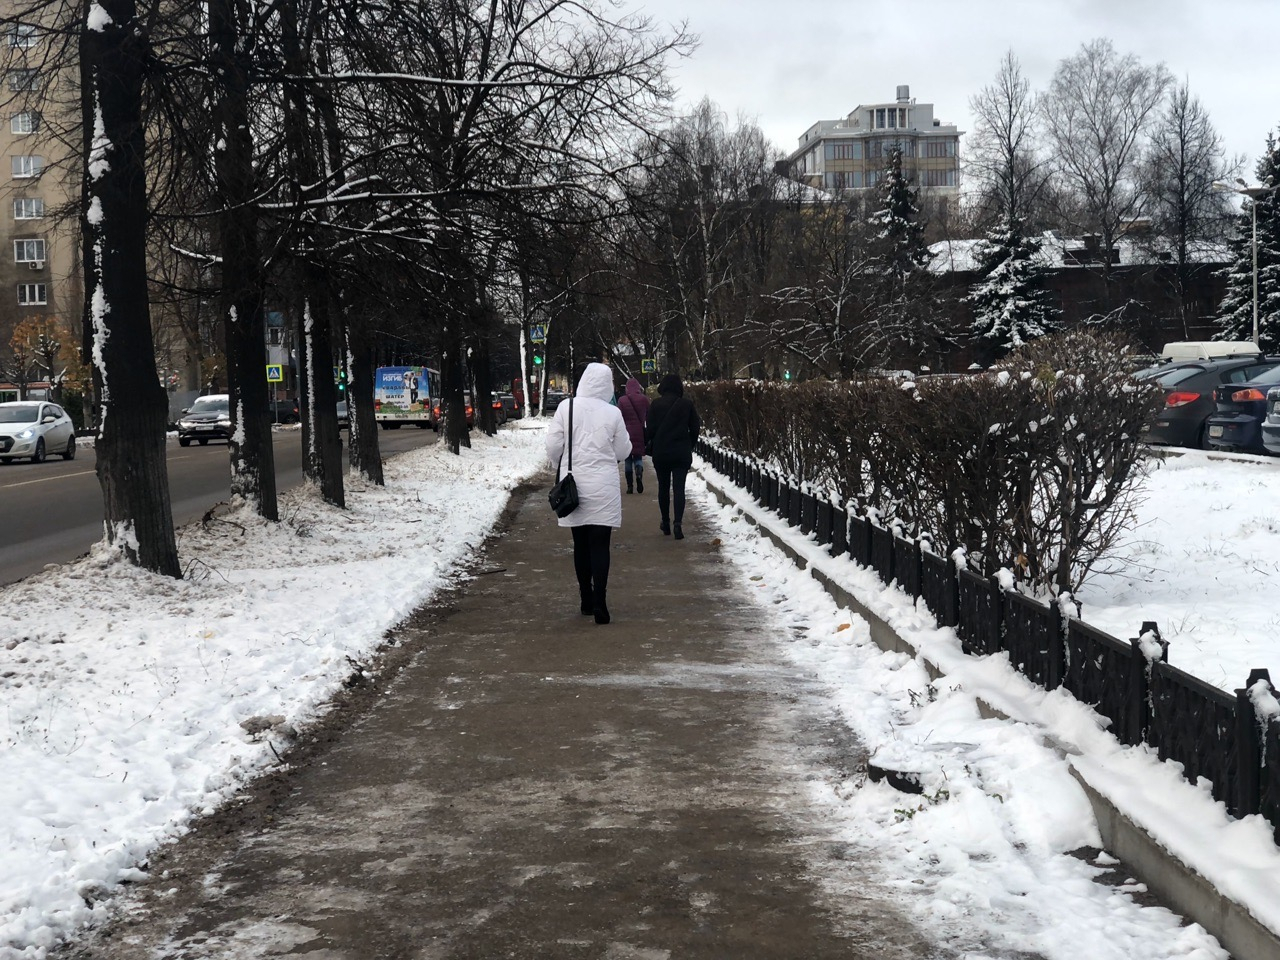 "Если пойдет дождь": что сулит ненастная погода на Казанскую, рассказали приметы